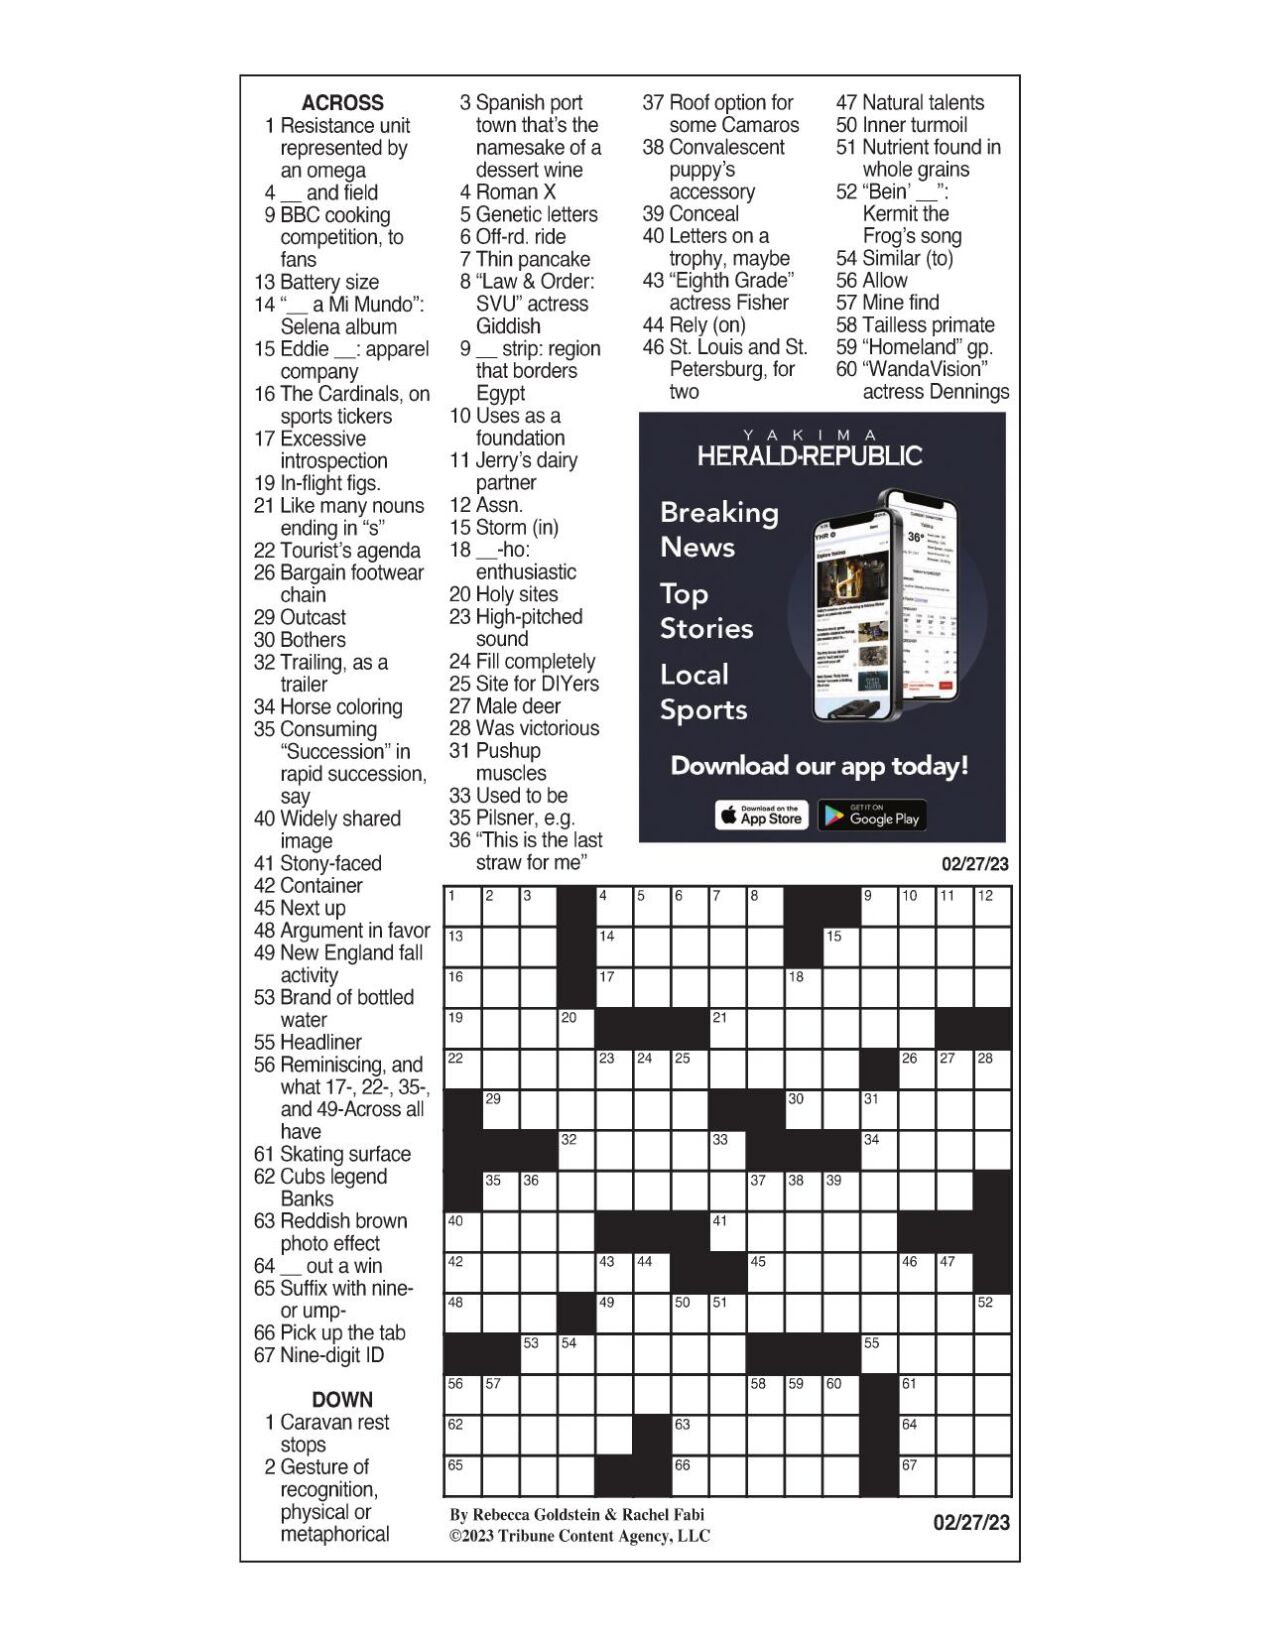 LA Times Crossword: Feb 27 2023 Crosswords yakimaherald com